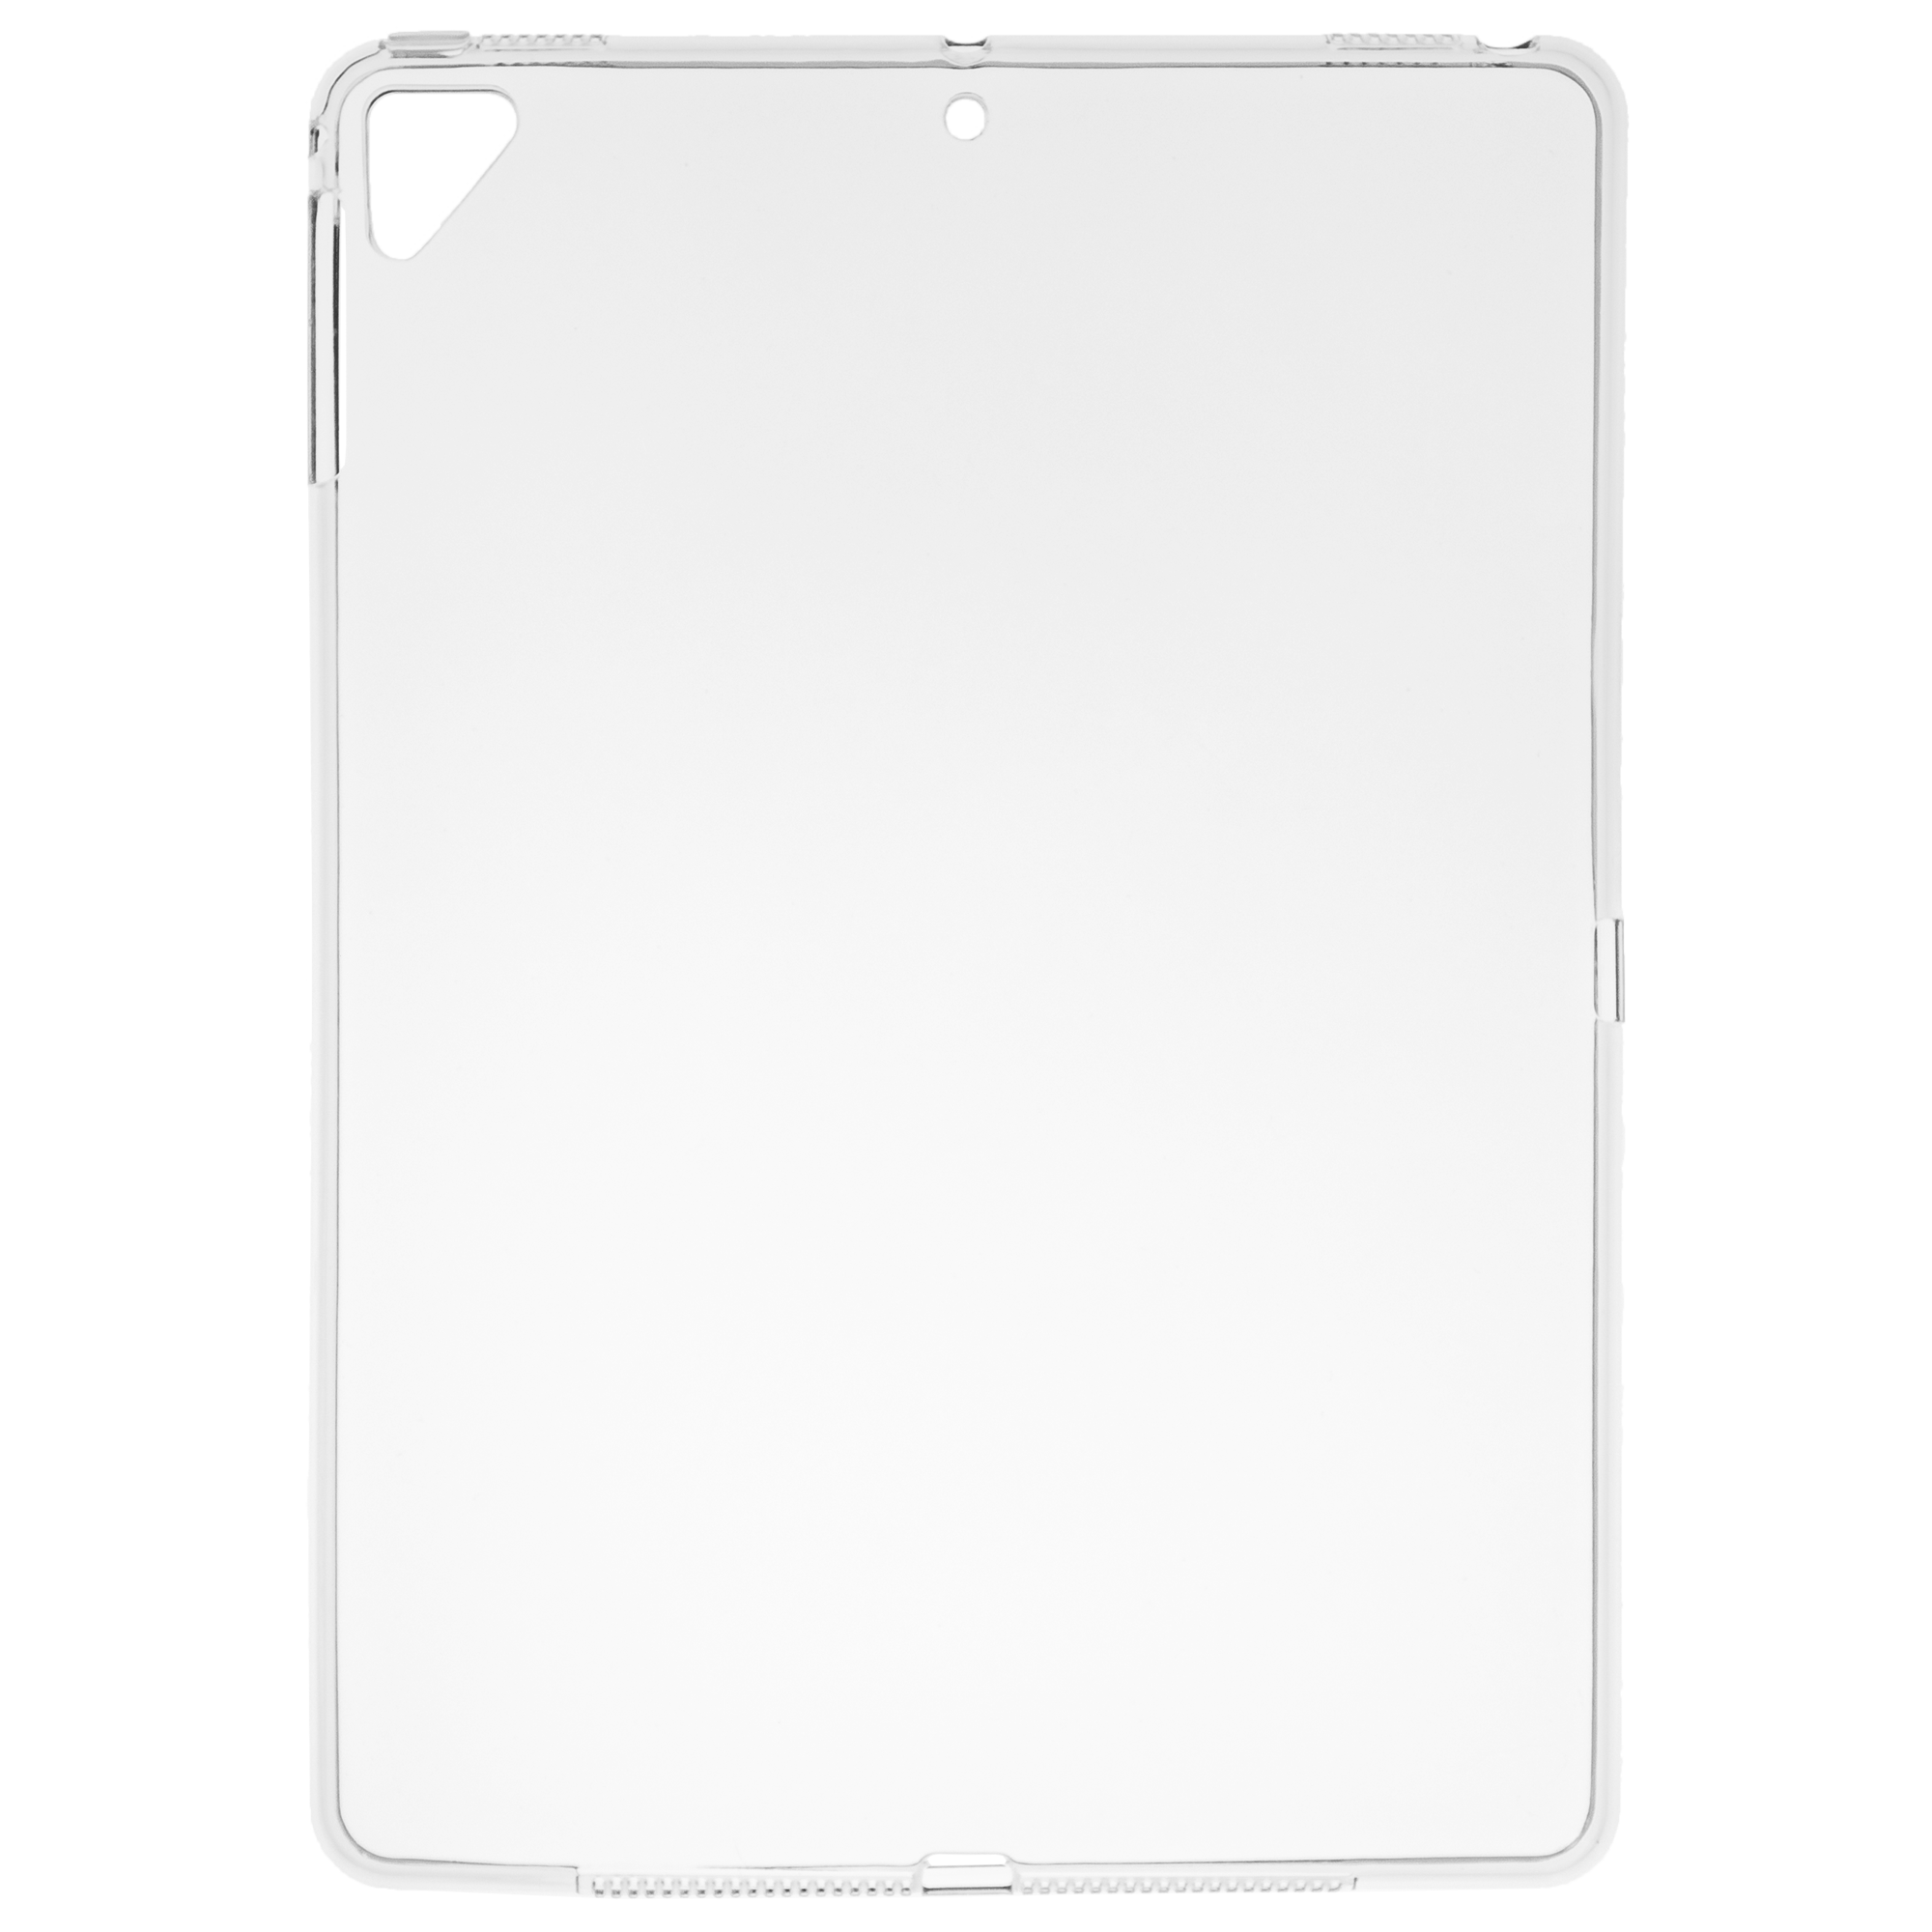 Het formulier longontsteking vers Acrylic TPU iPad Pro (2016) 9,7-inch hoesje kopen? | Fixje